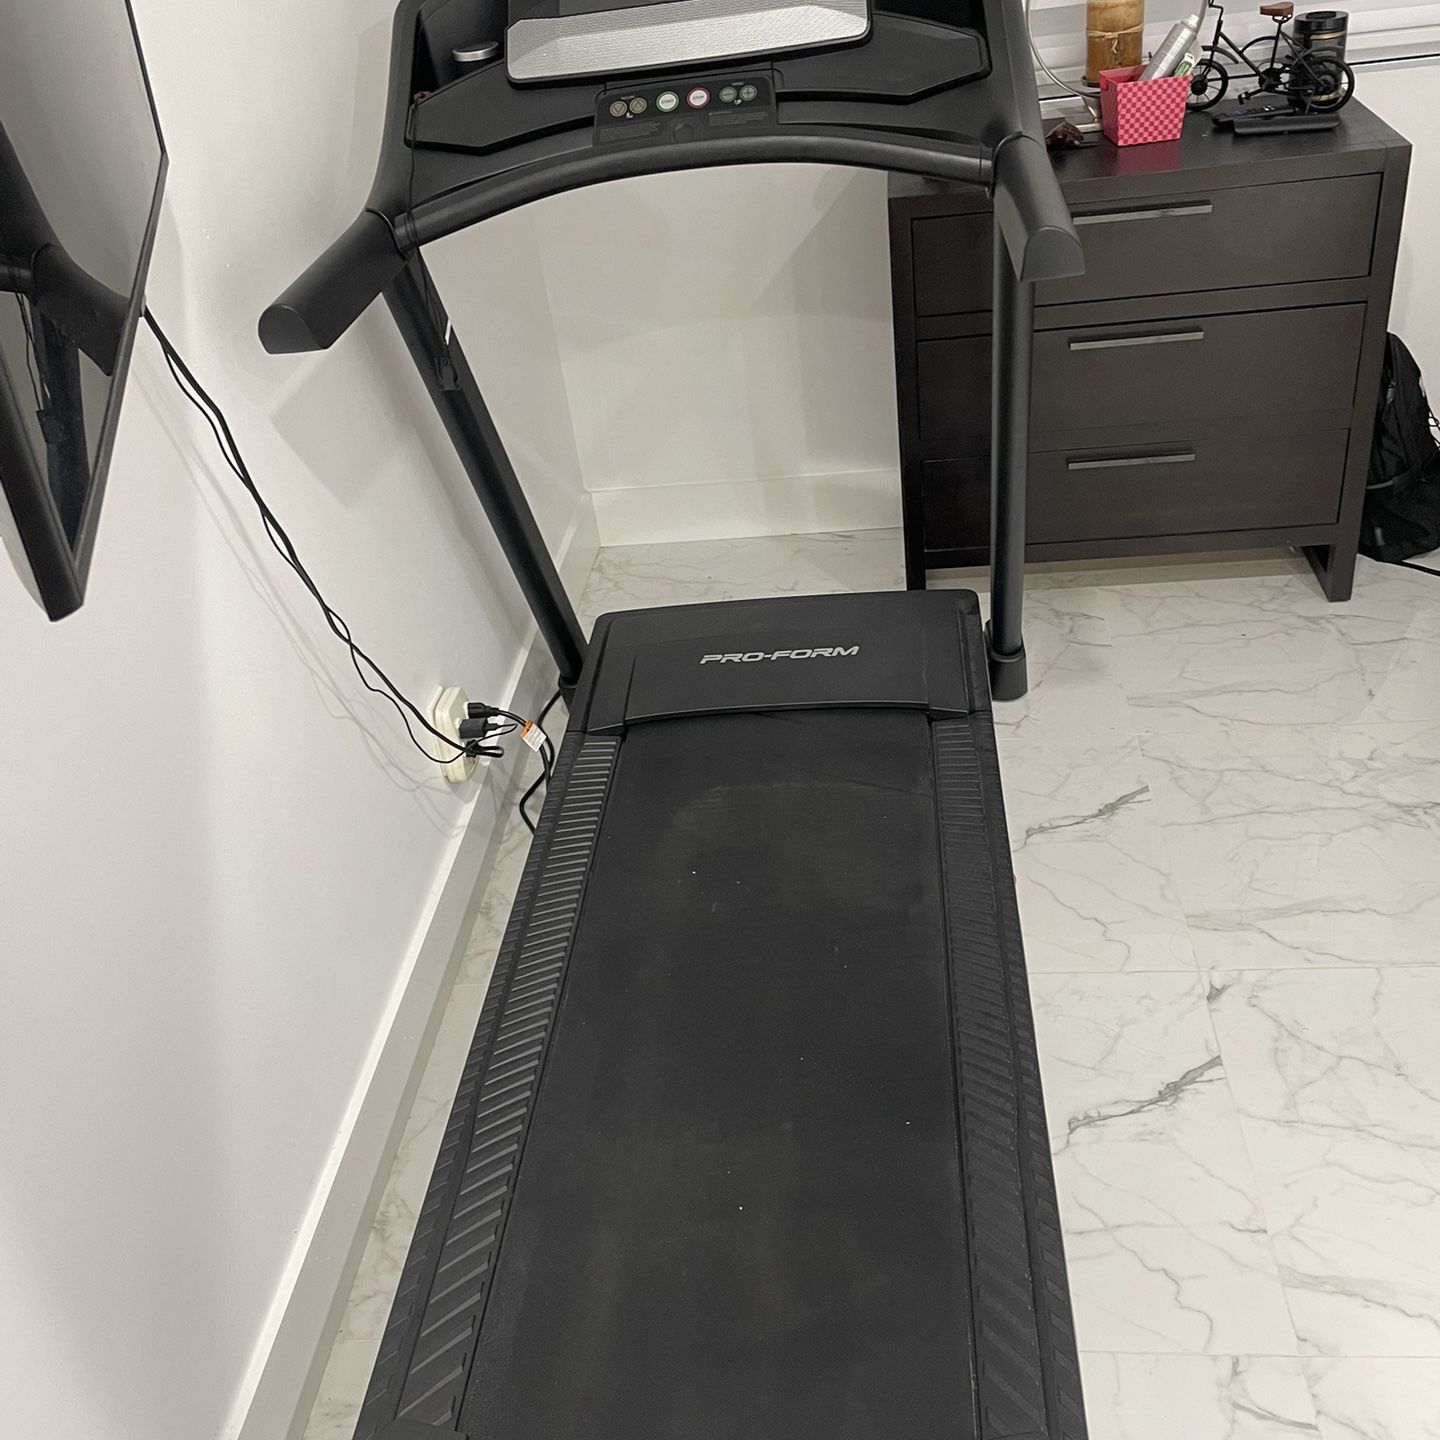 Treadmill ProForm model 59720.5 -pftl  